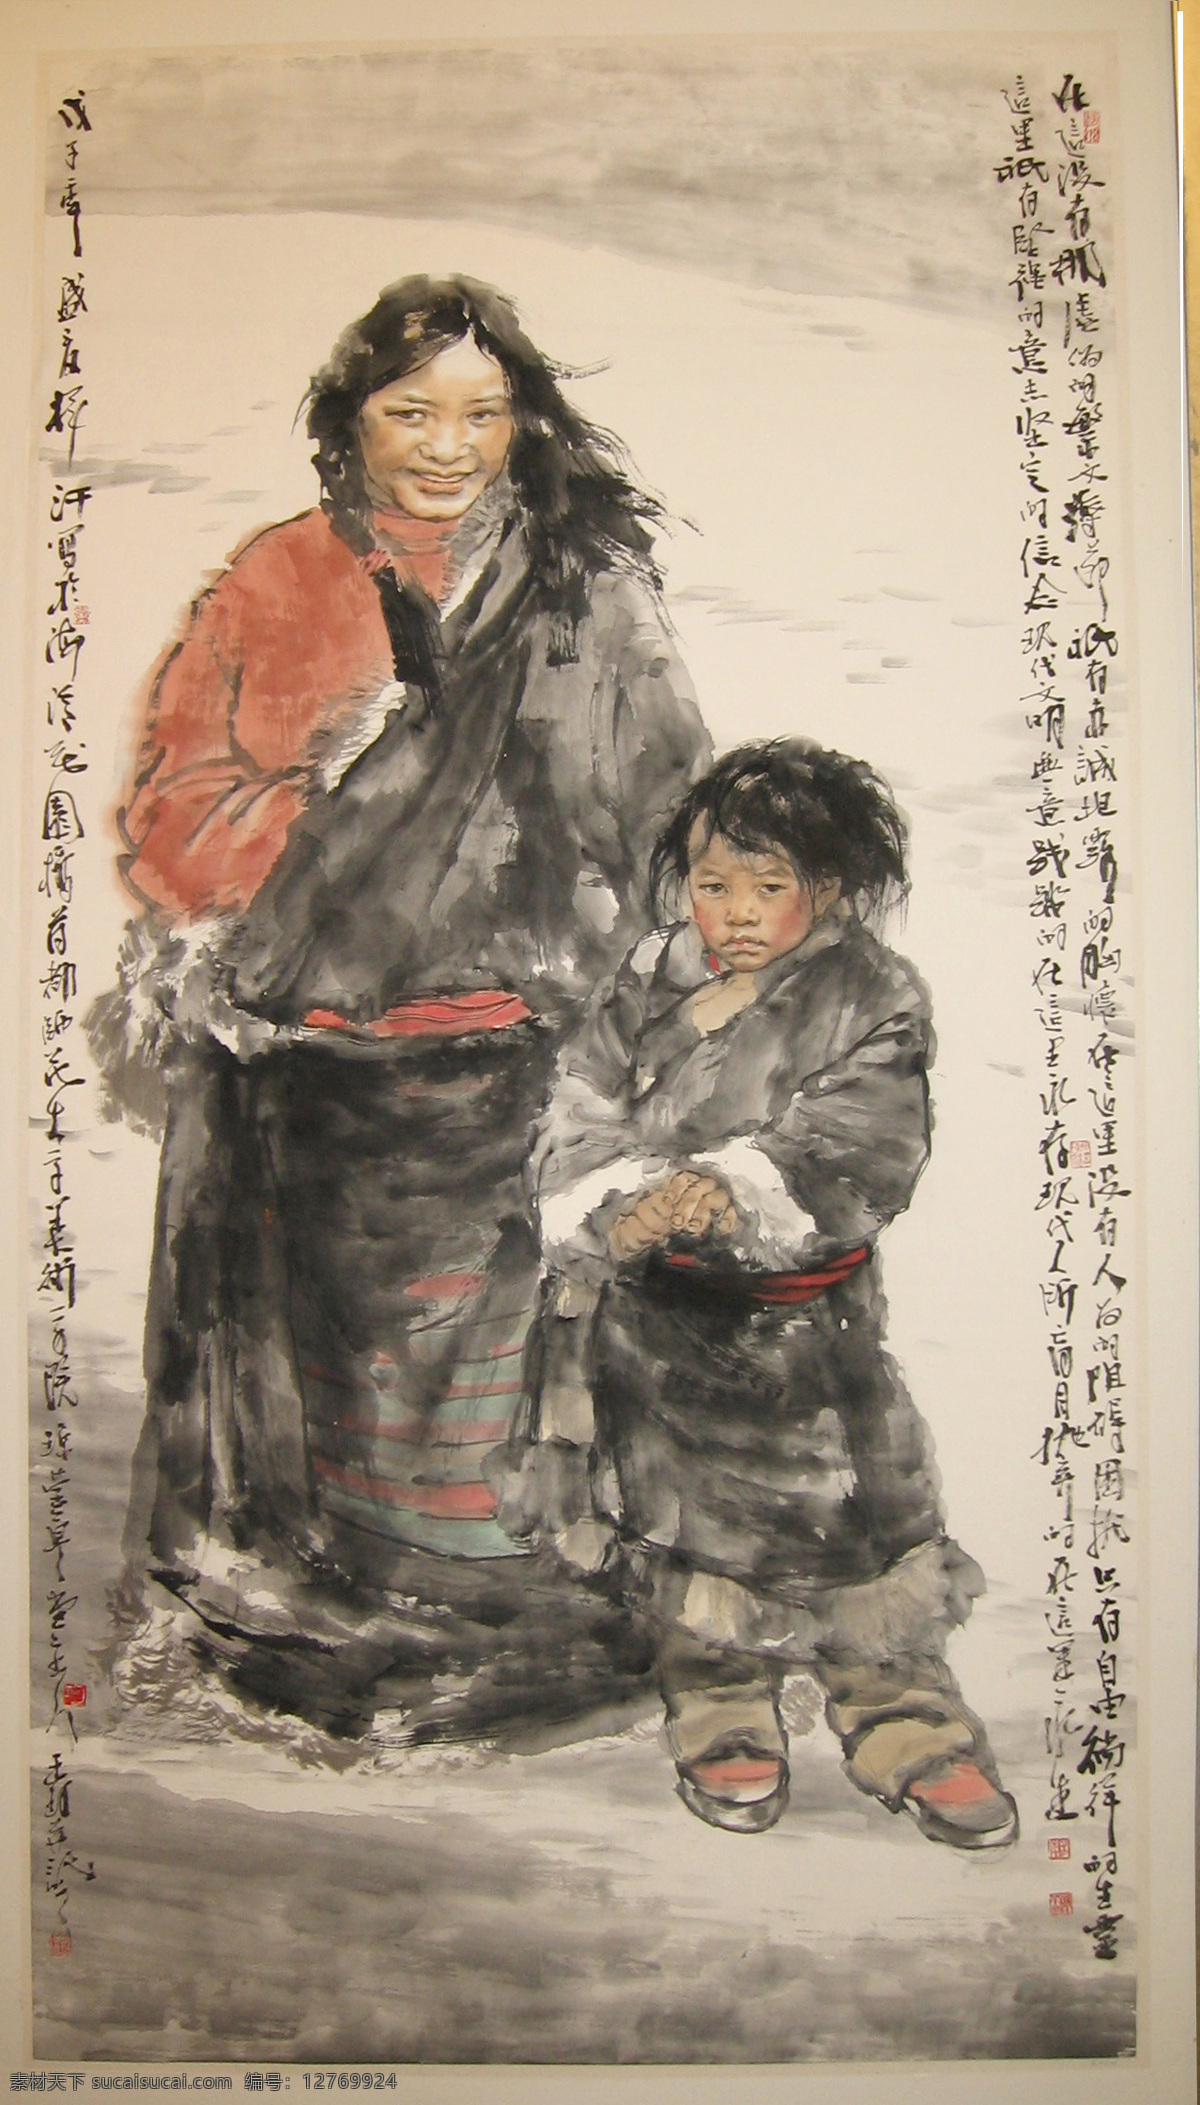 国画藏族姐弟 国画 藏族 姐弟 青藏 写意画 国画作品 绘画书法 文化艺术